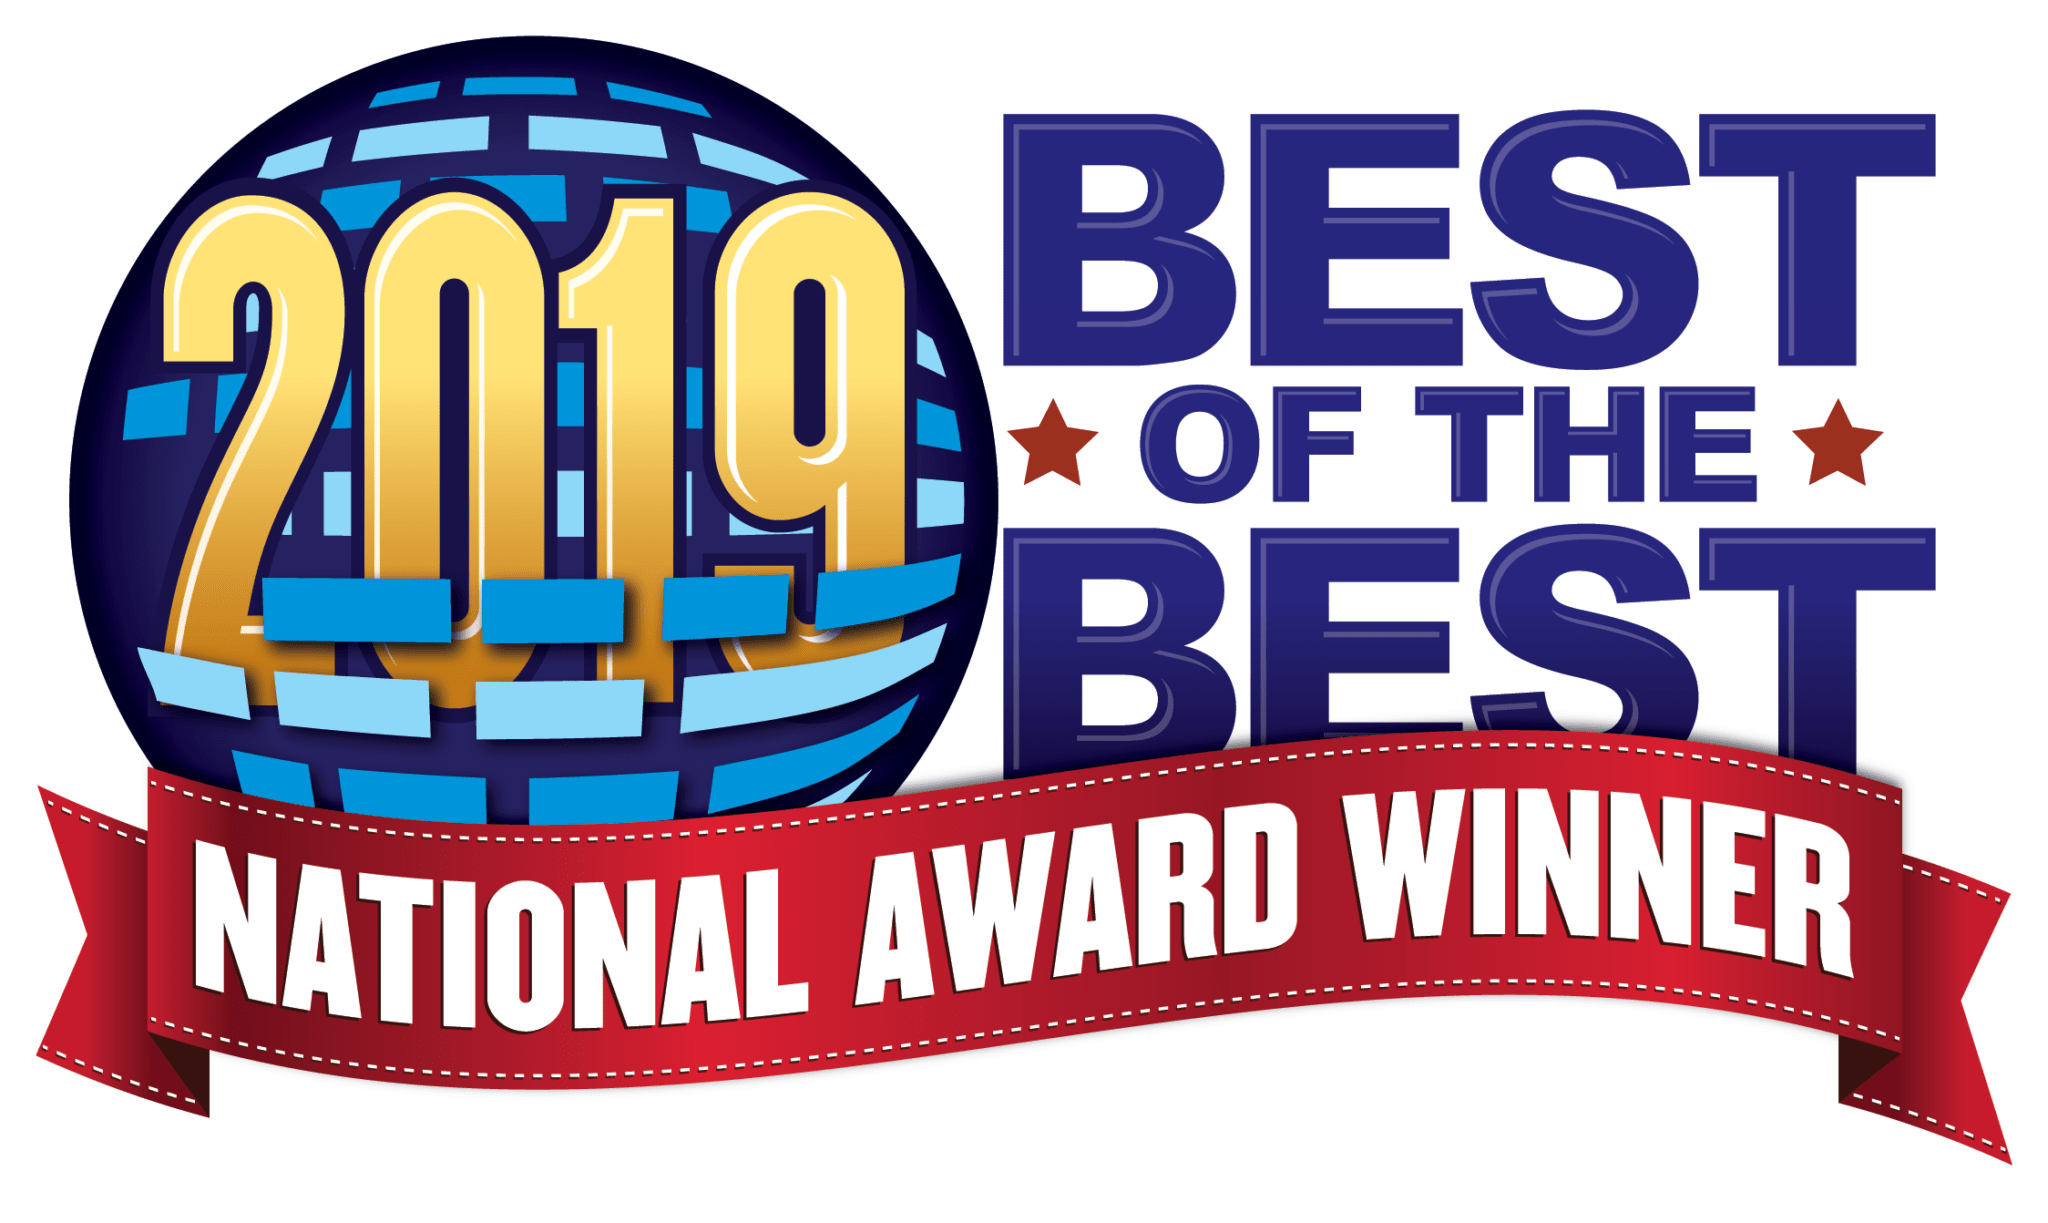 Best of the best national award winner logo